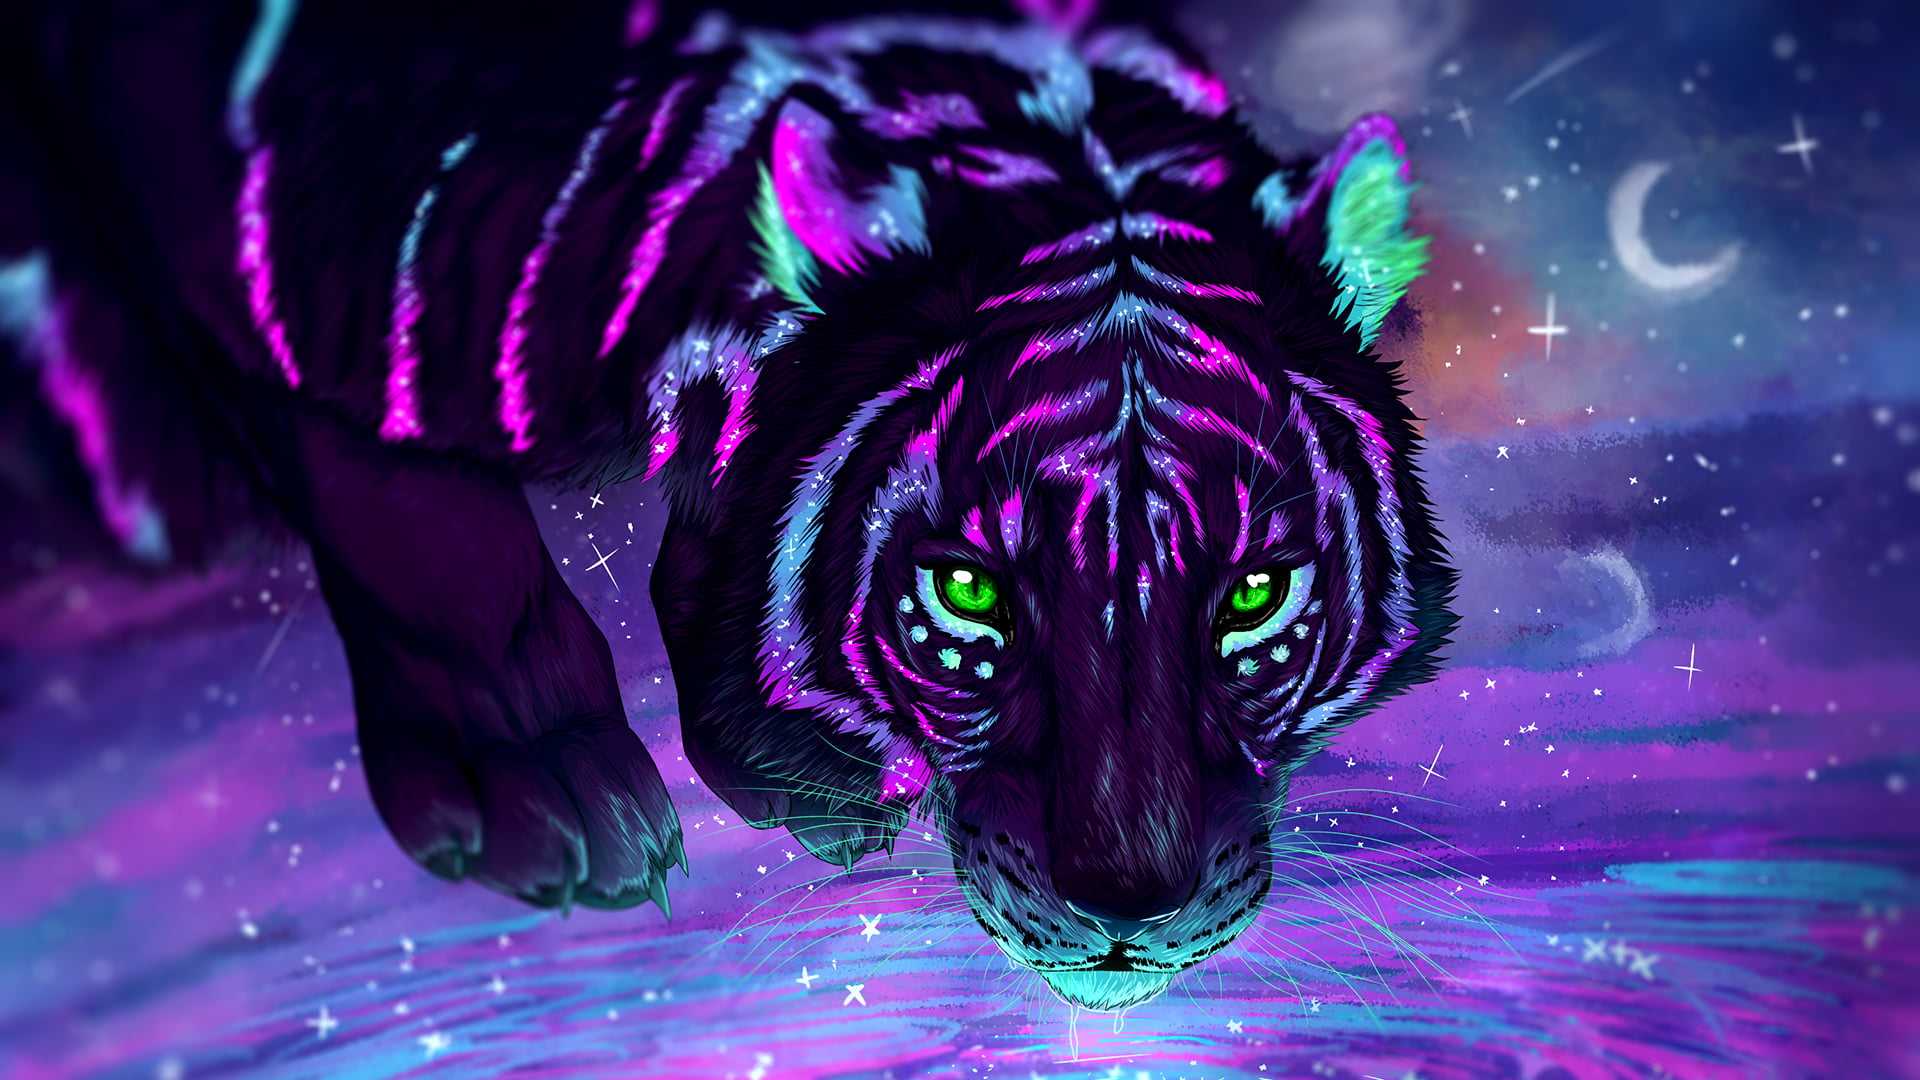 purple and black tiger HD wallpaper, digital art, stars, galaxy